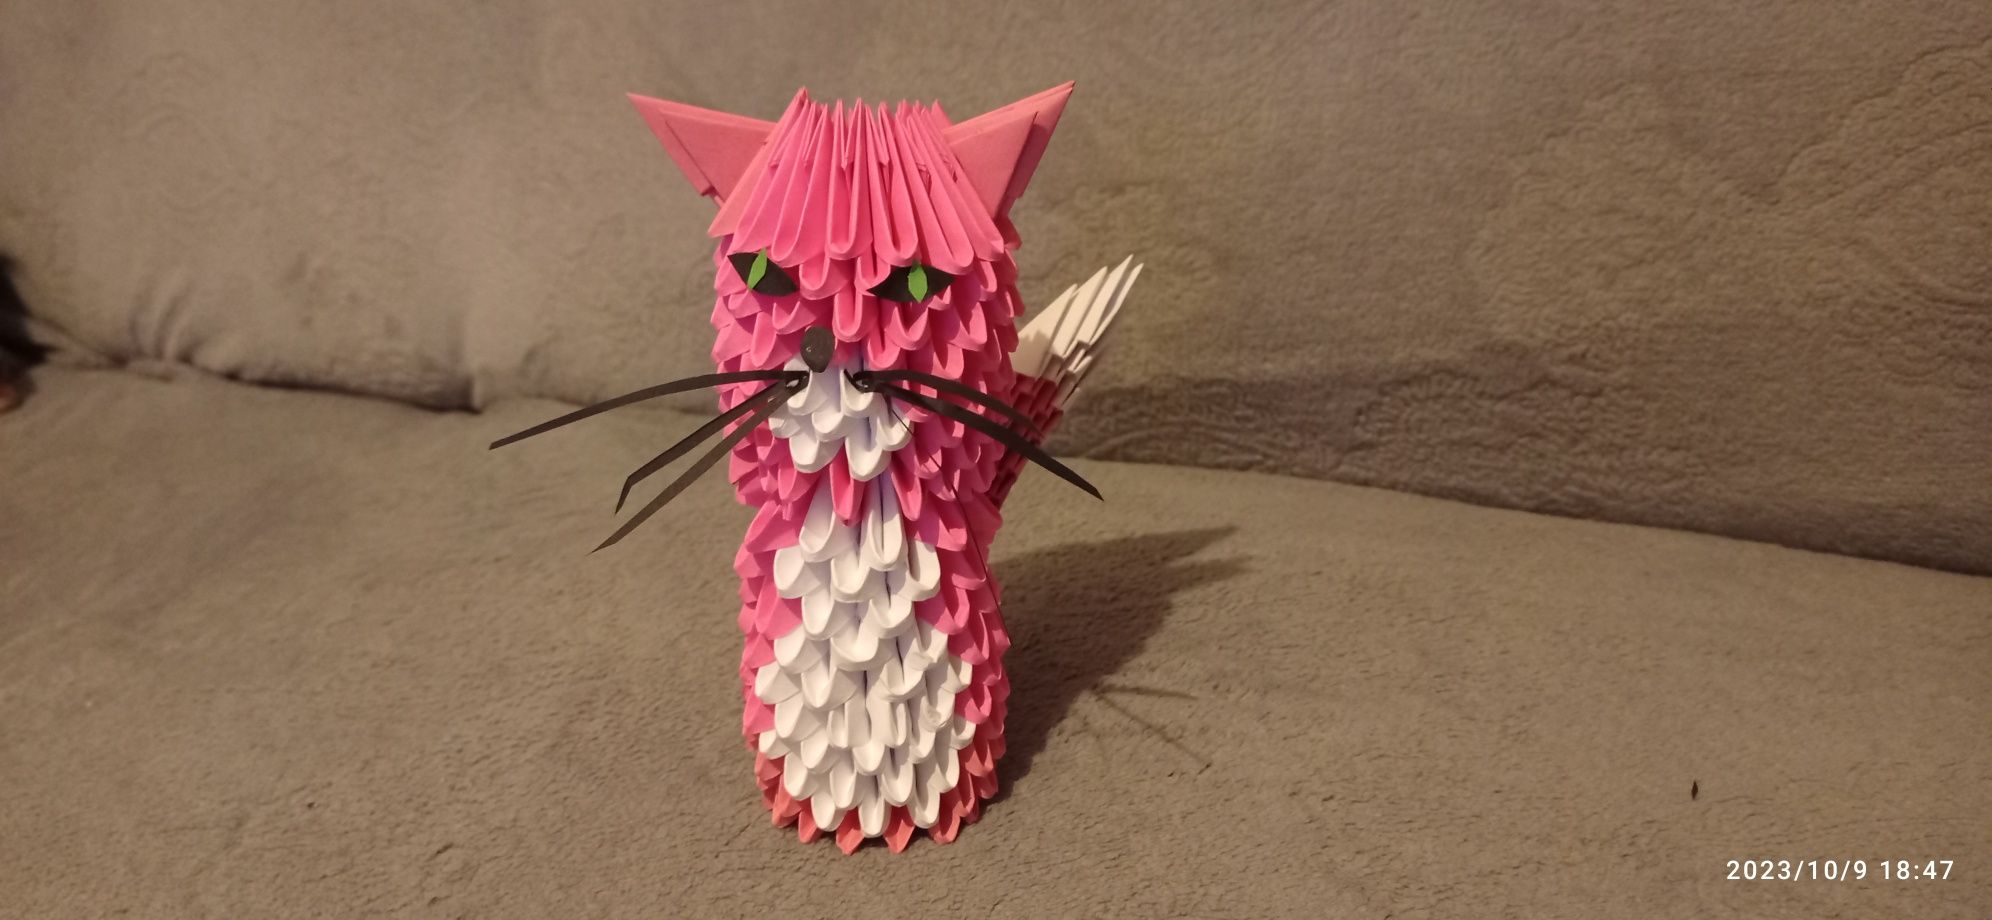 Zwierzątka z origami modułowego.